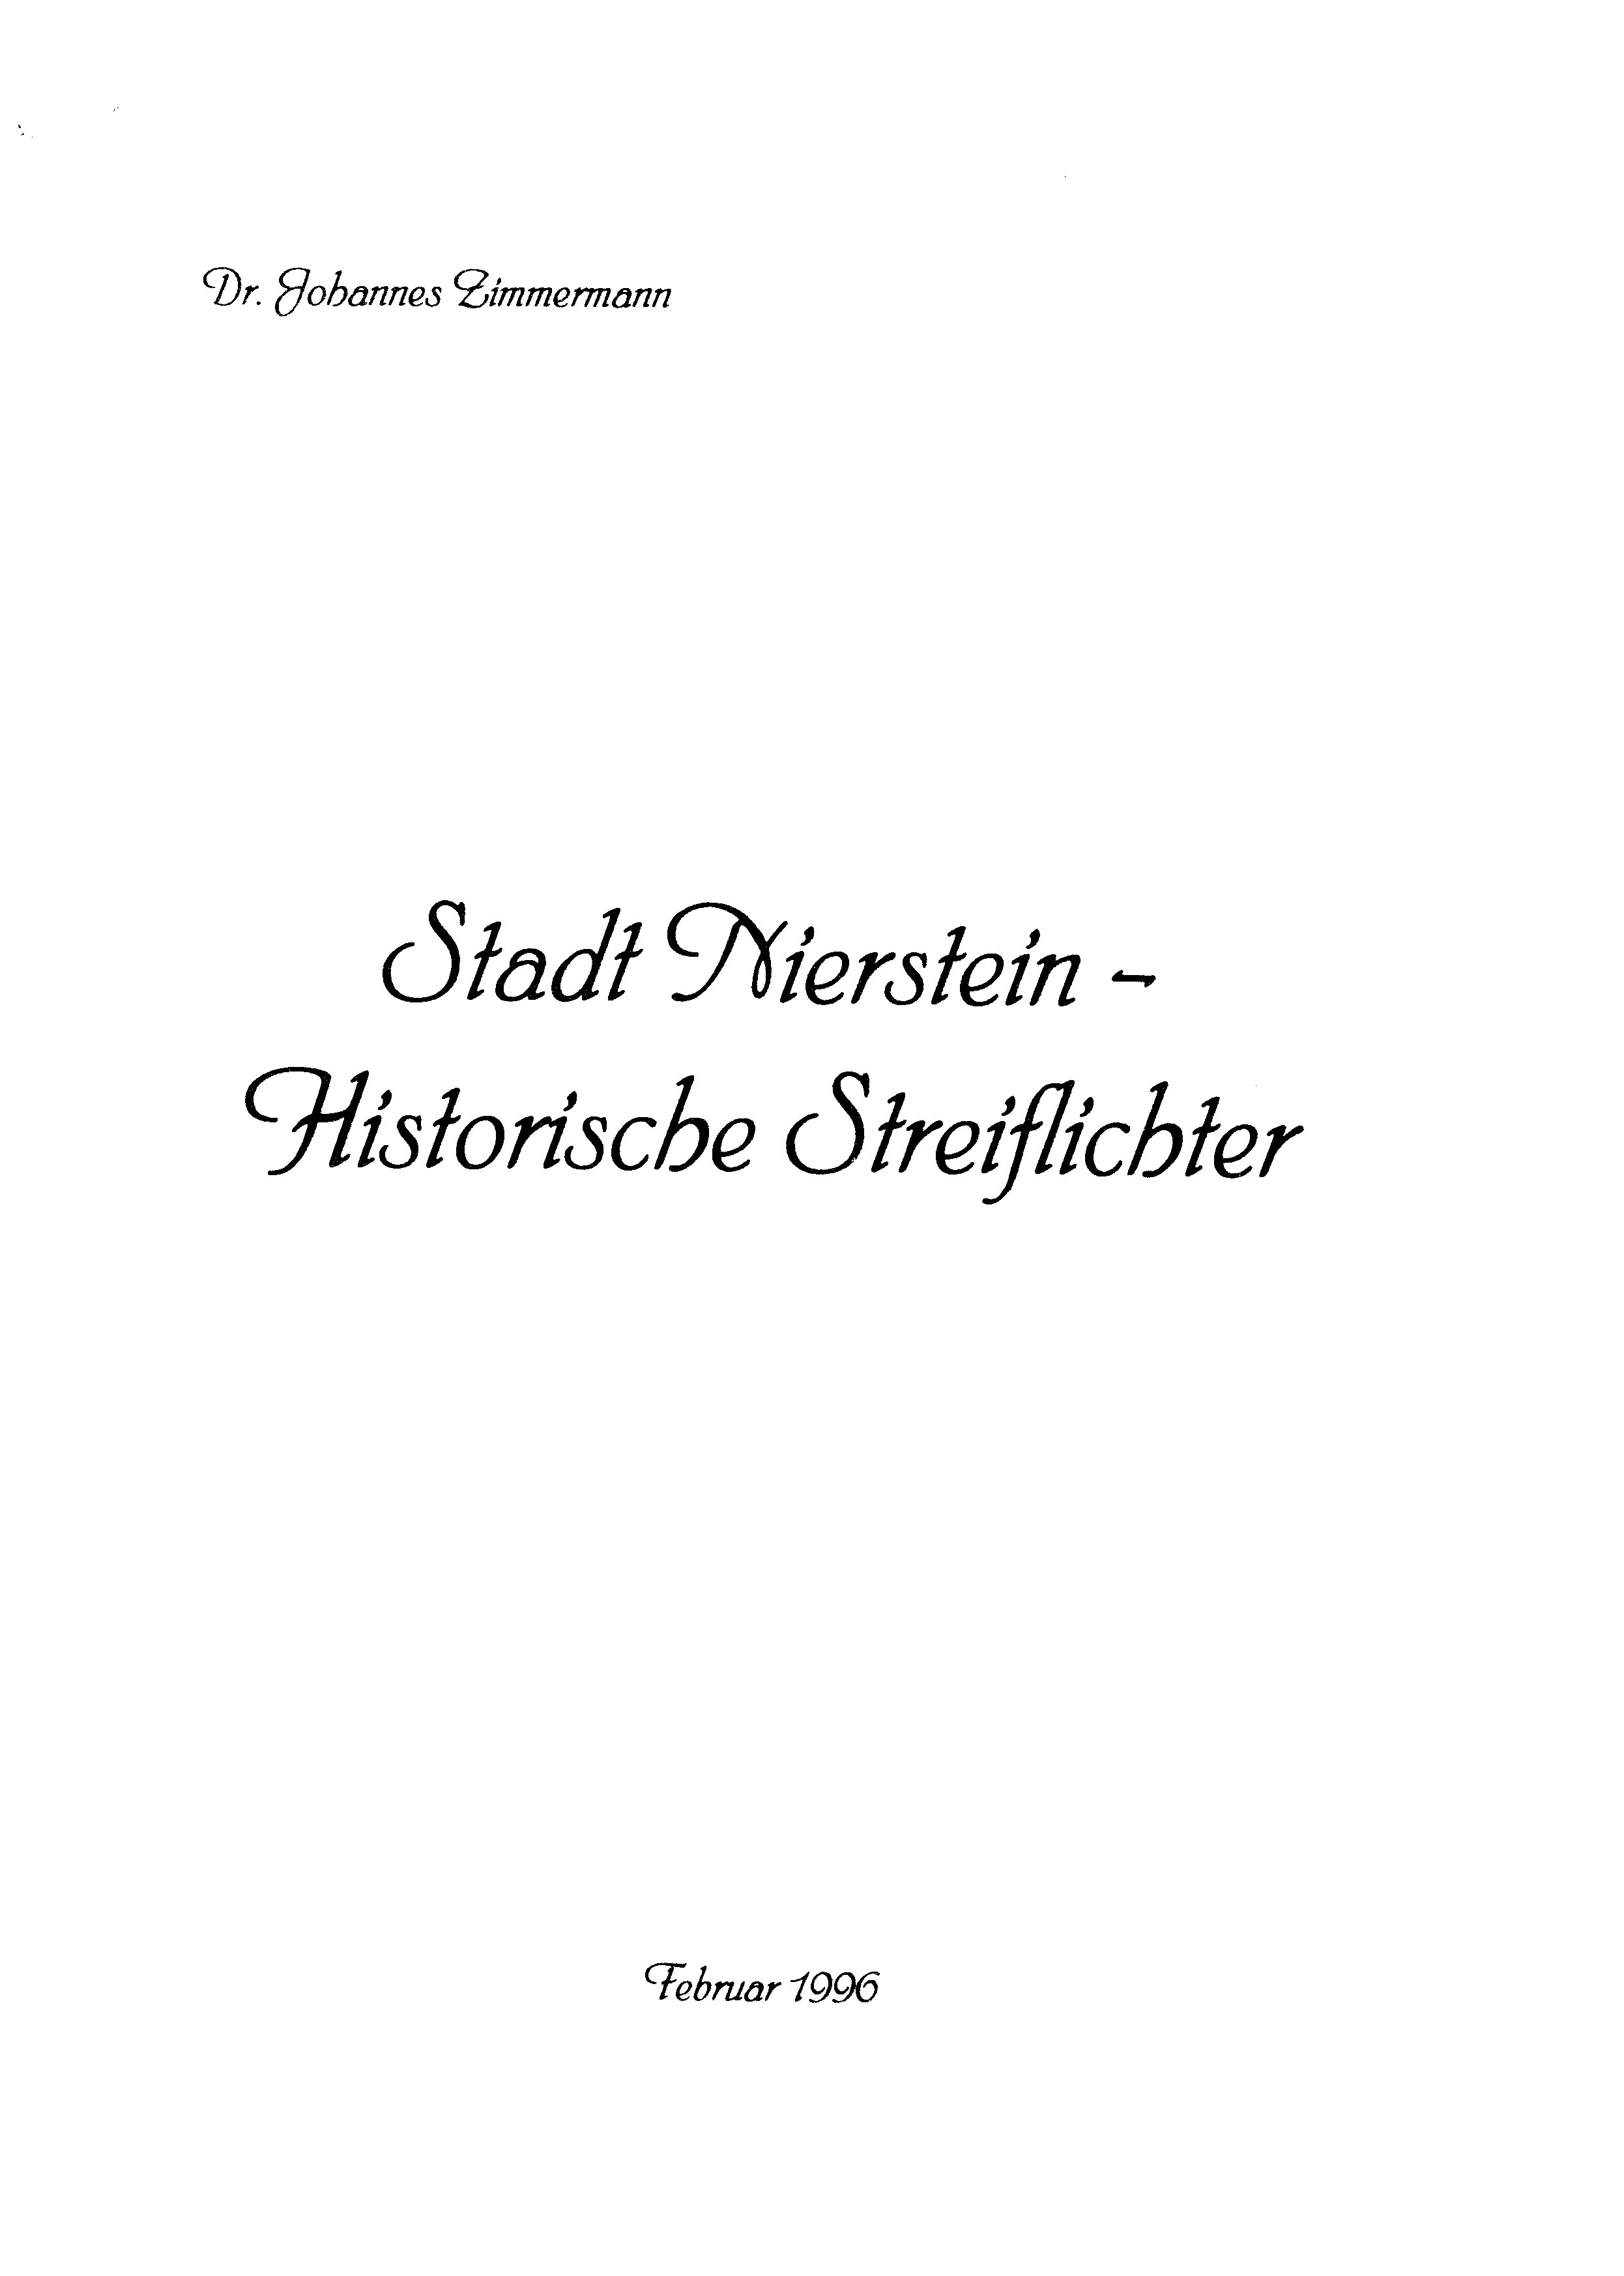 Stadt Nierstein - Historische Streiflichter (Kulturverein Guntersblum CC BY-NC-SA)